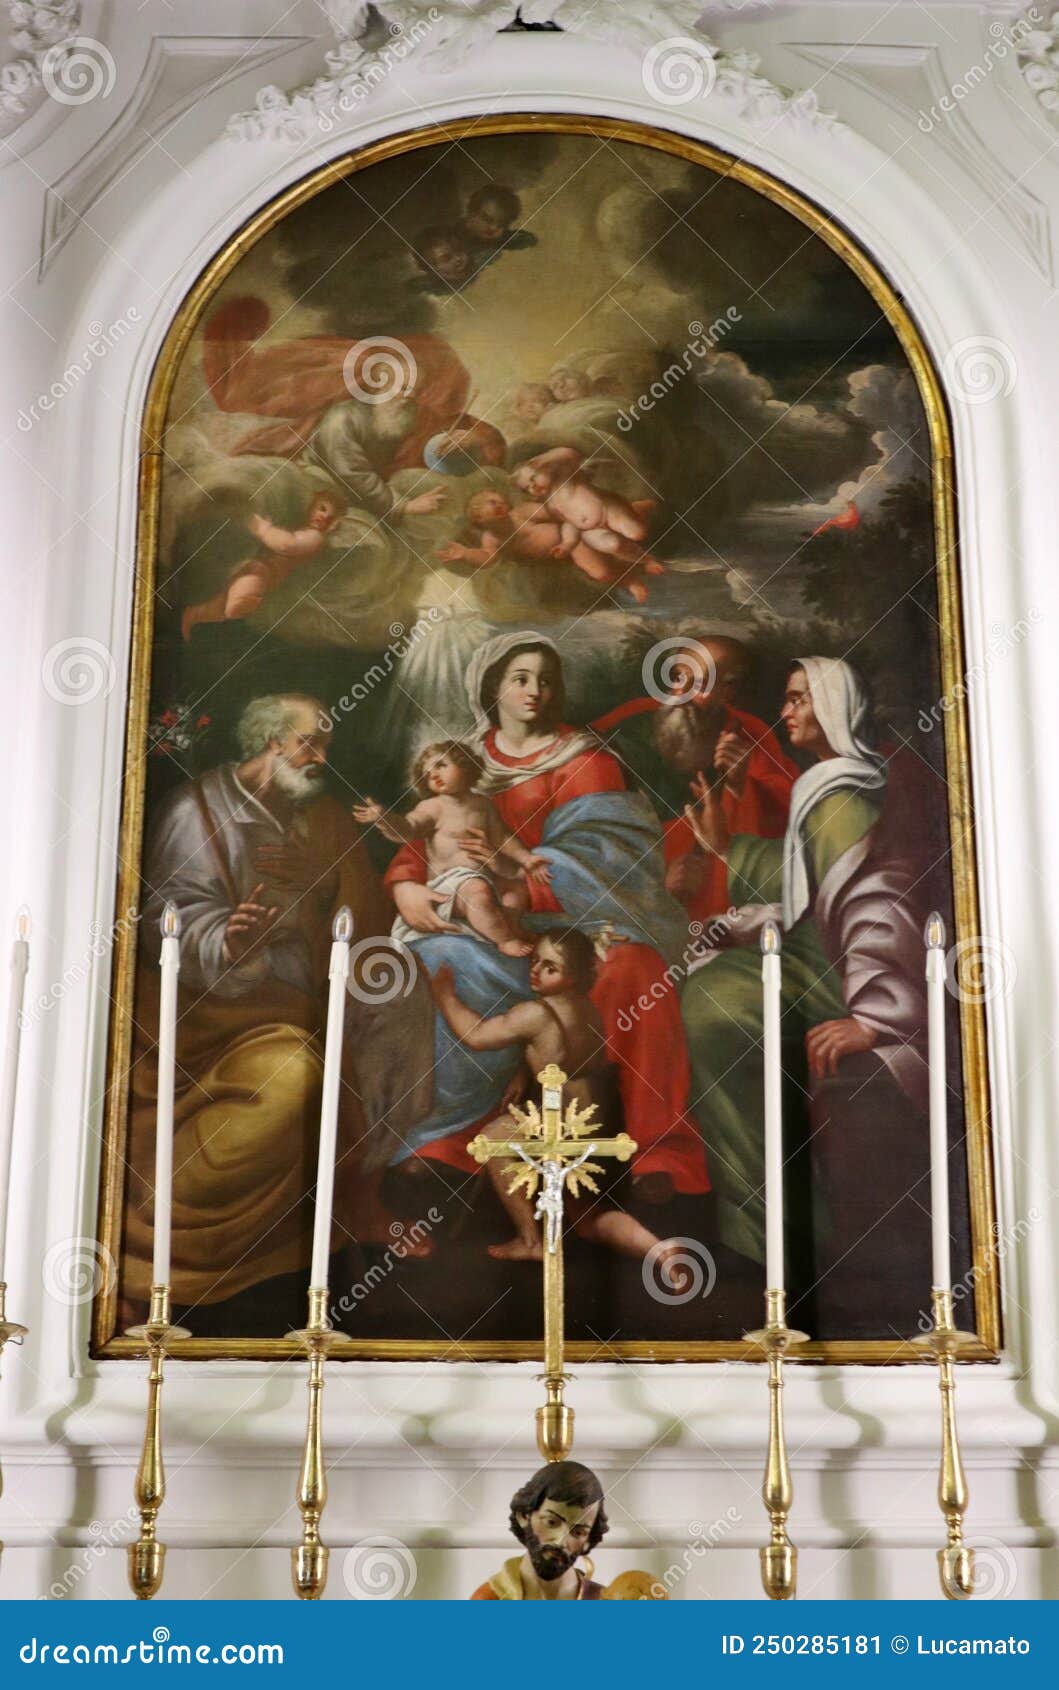 ischia - dipinto della sacra famiglia nella chiesa dello spirito santo